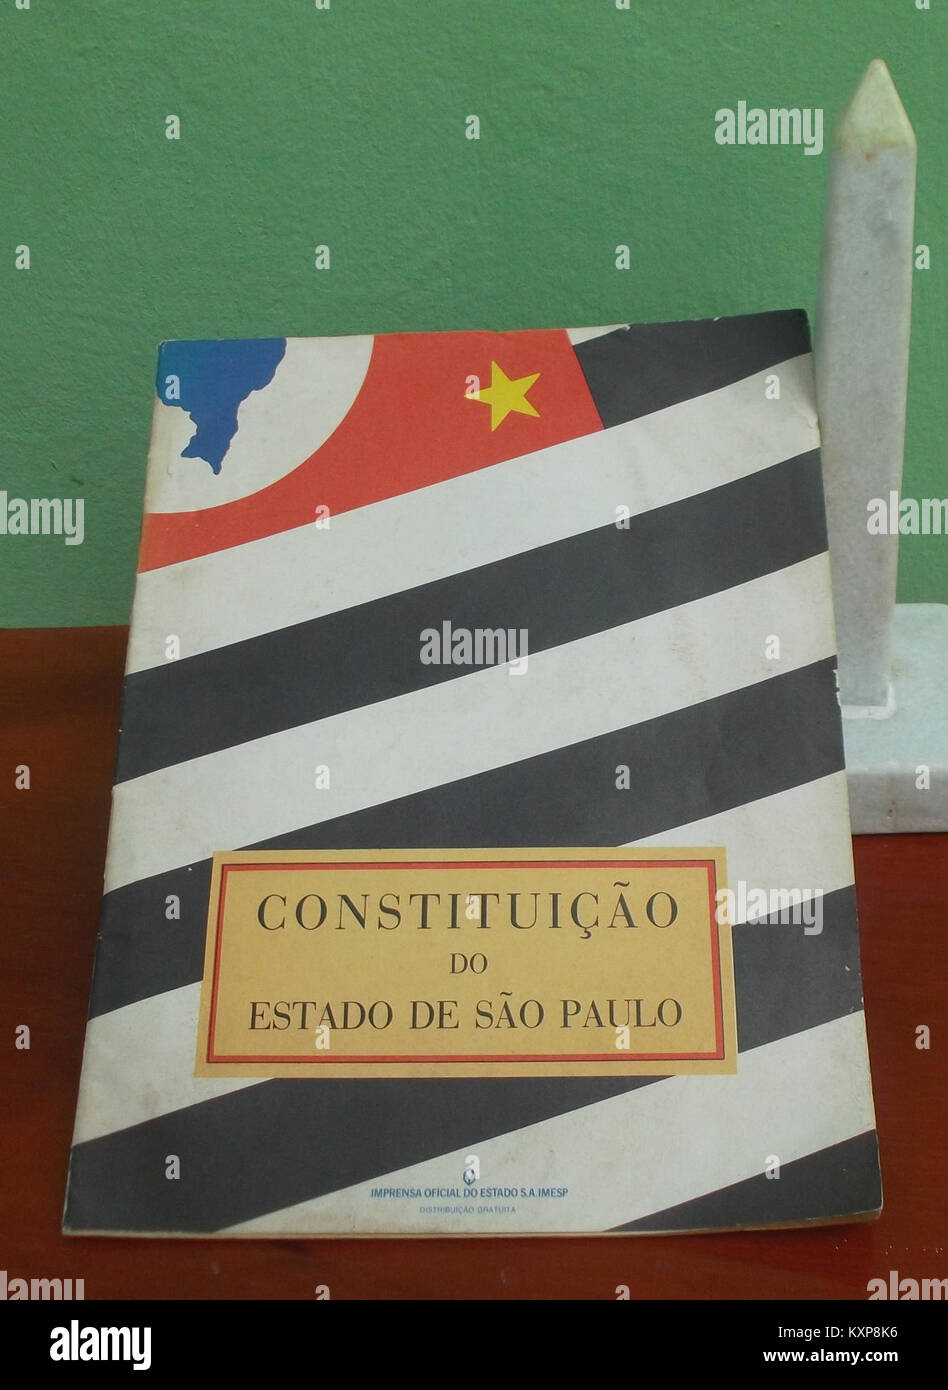 Constituição Política do Estado de São Paulo de 1989 Stock Photo